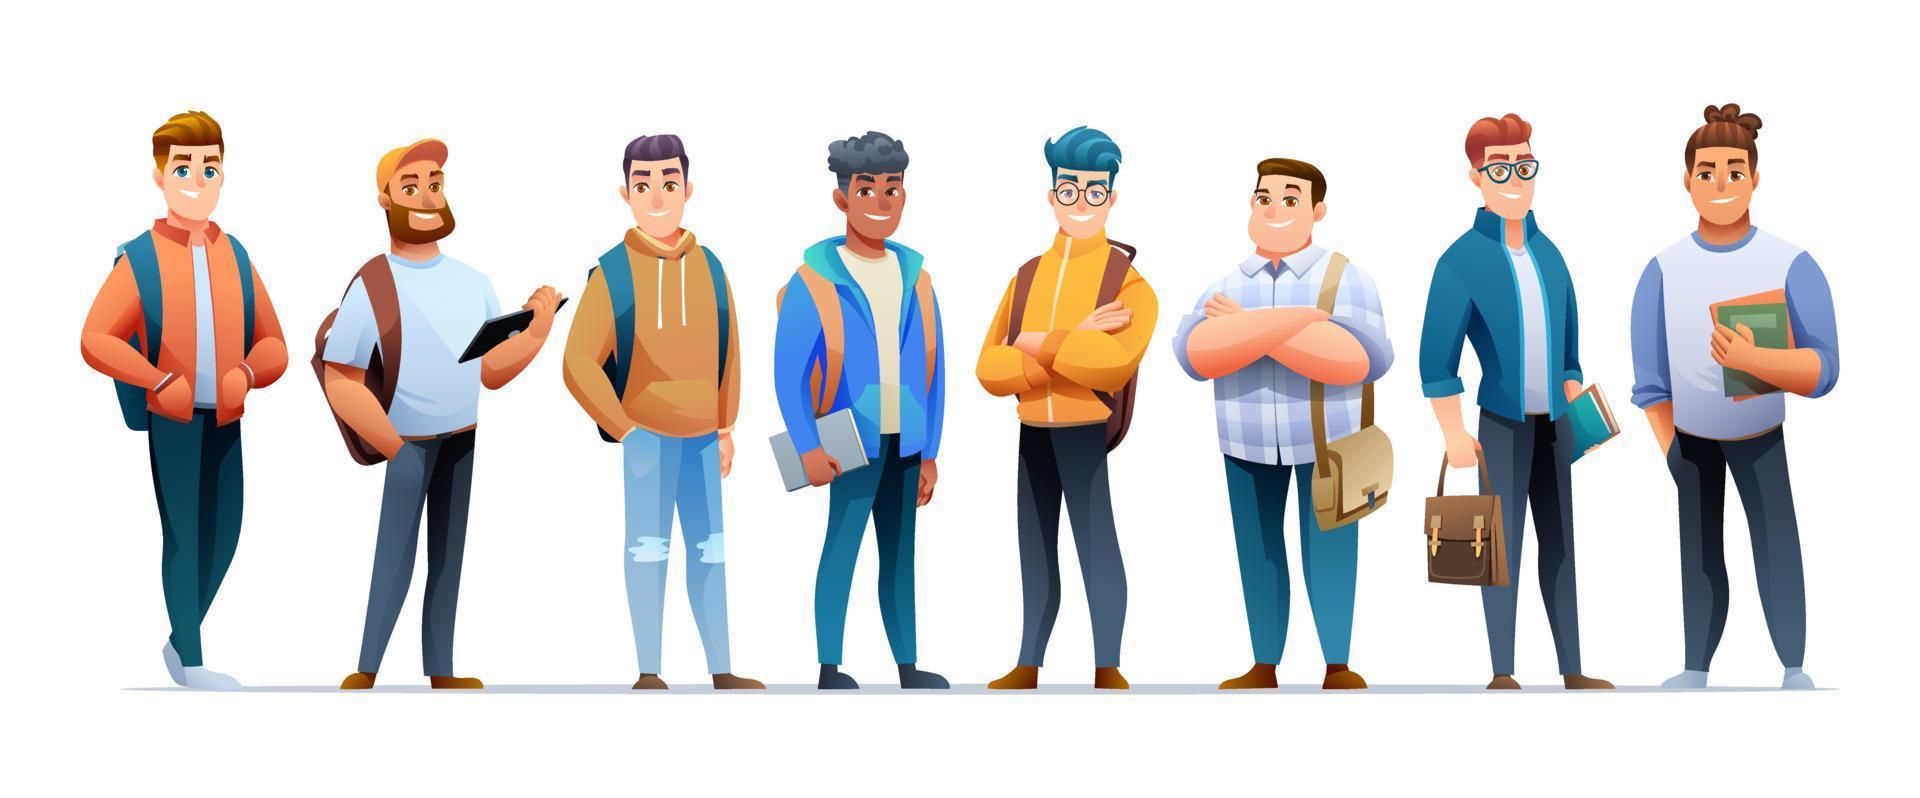 set jonge mannen student karakters in cartoon-stijl vector